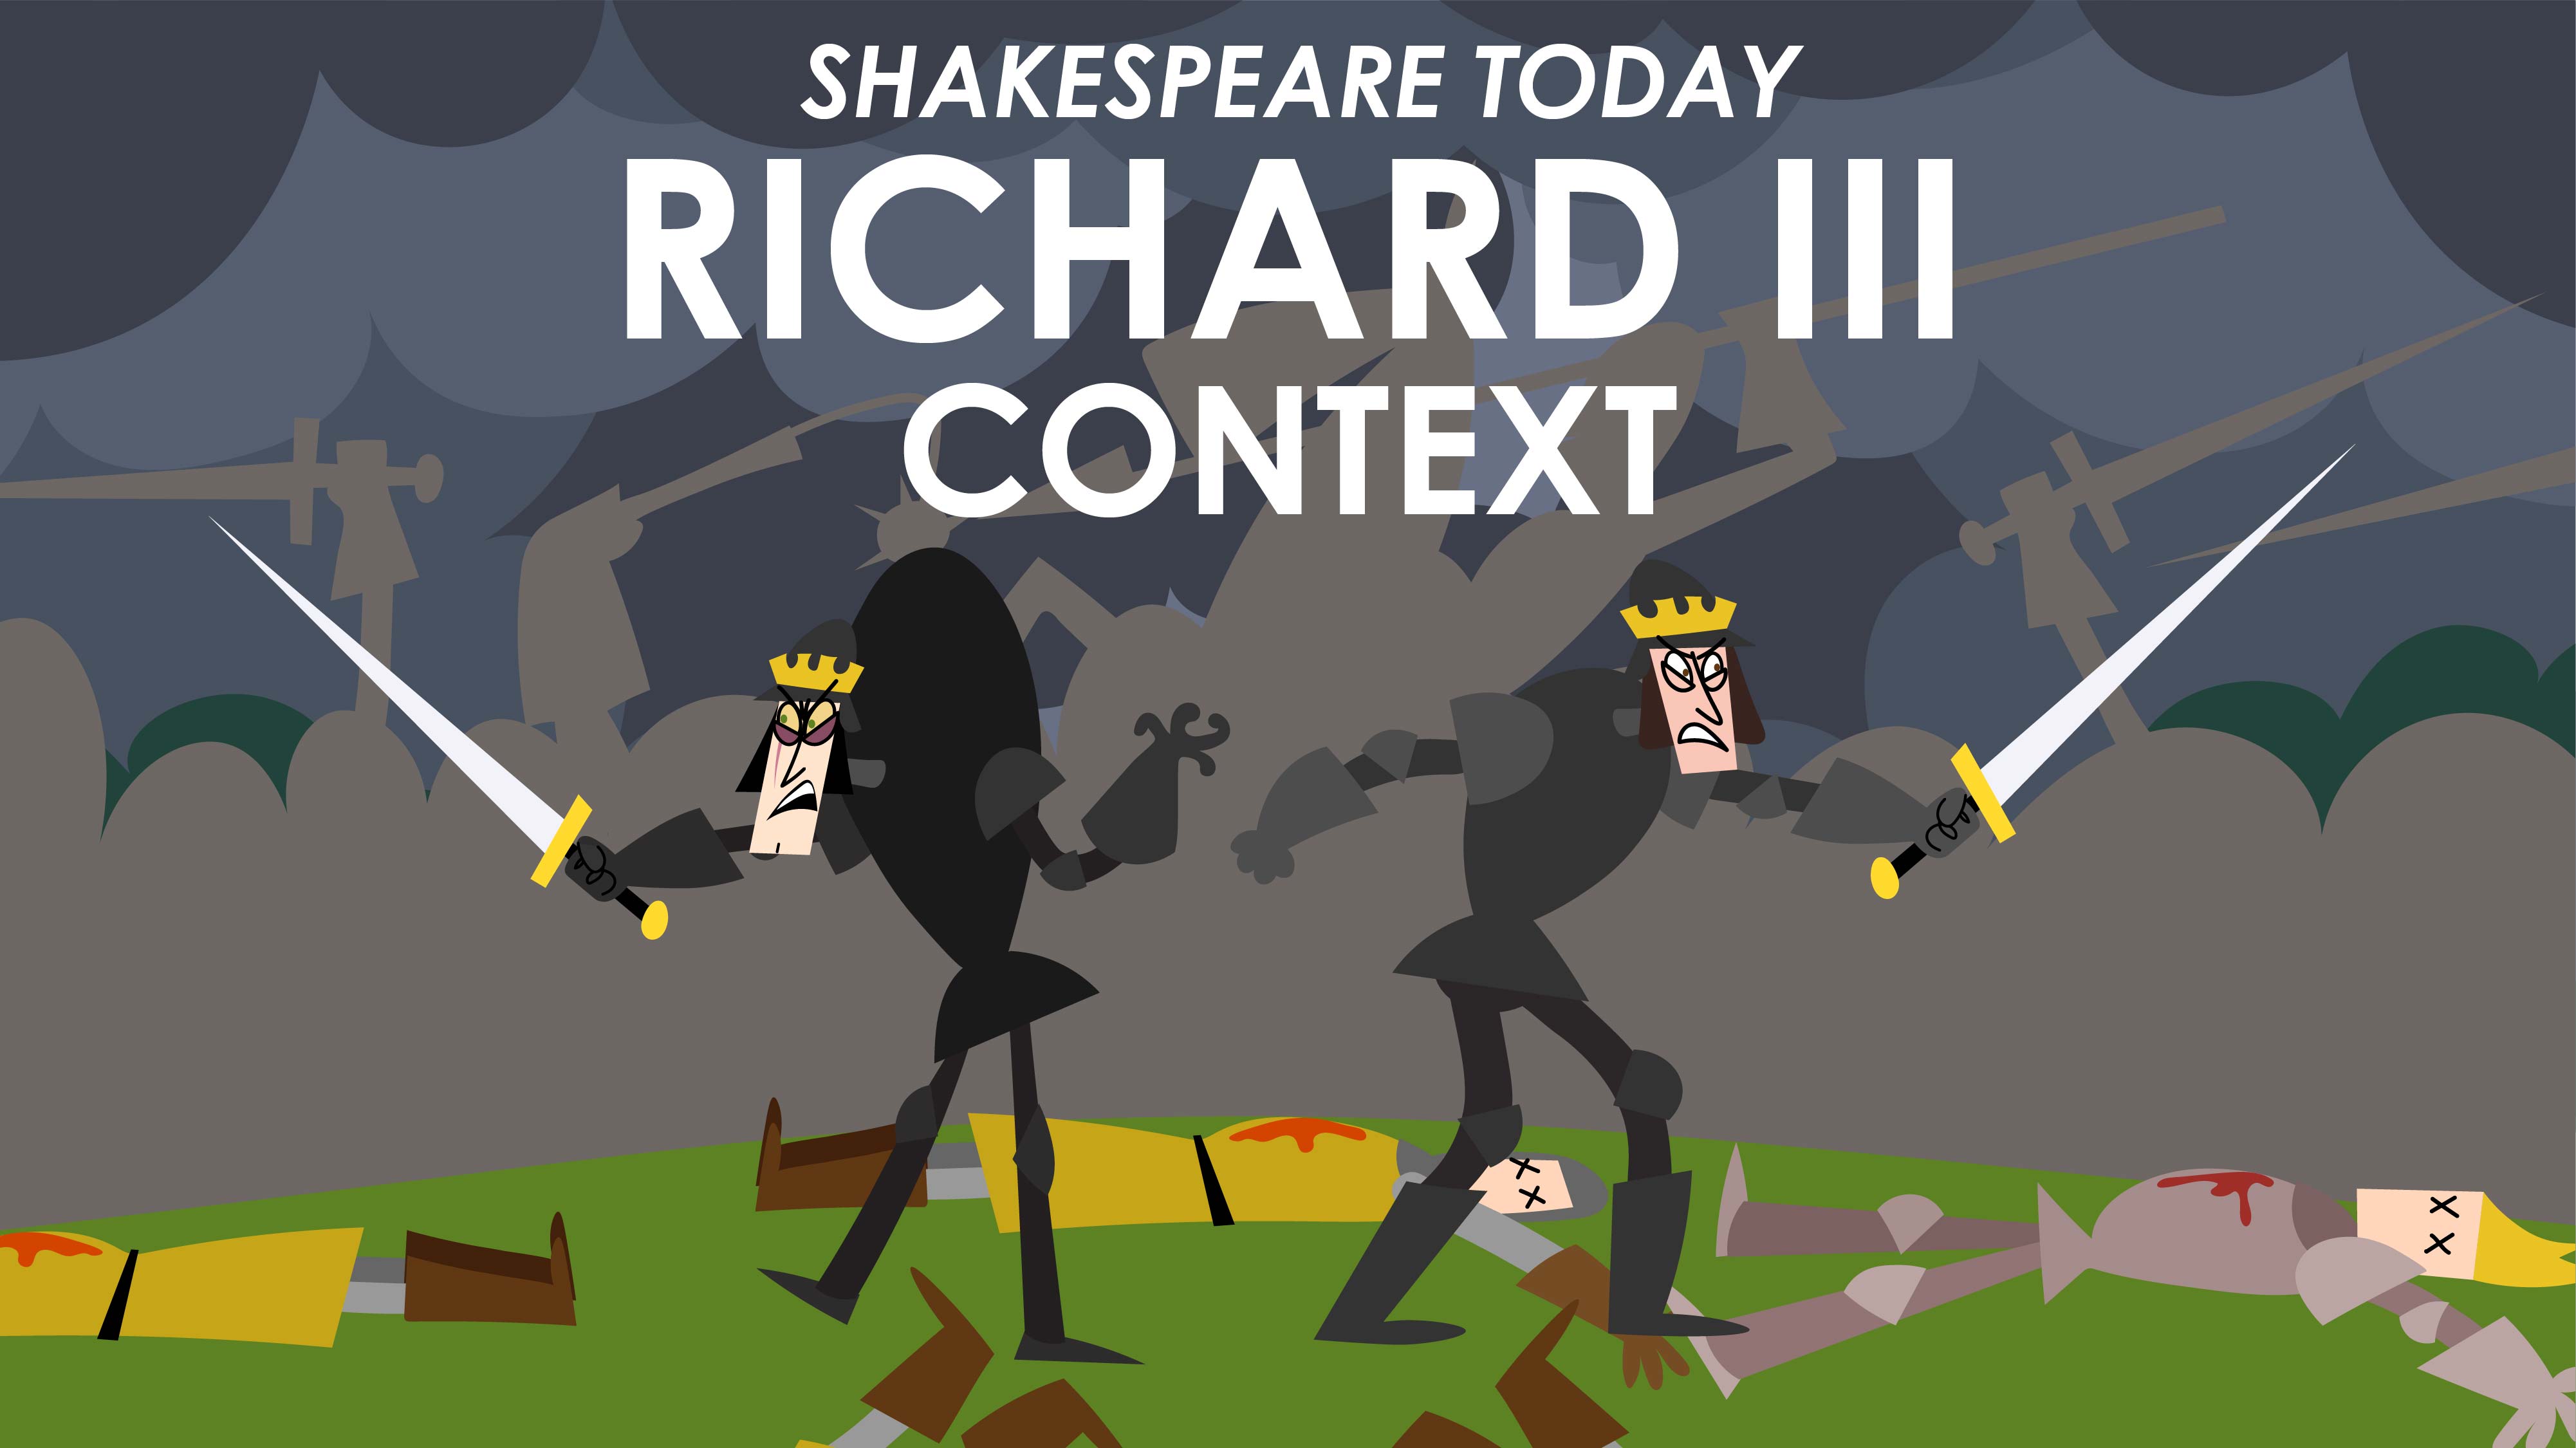 Richard III Context - Shakespeare Today Series